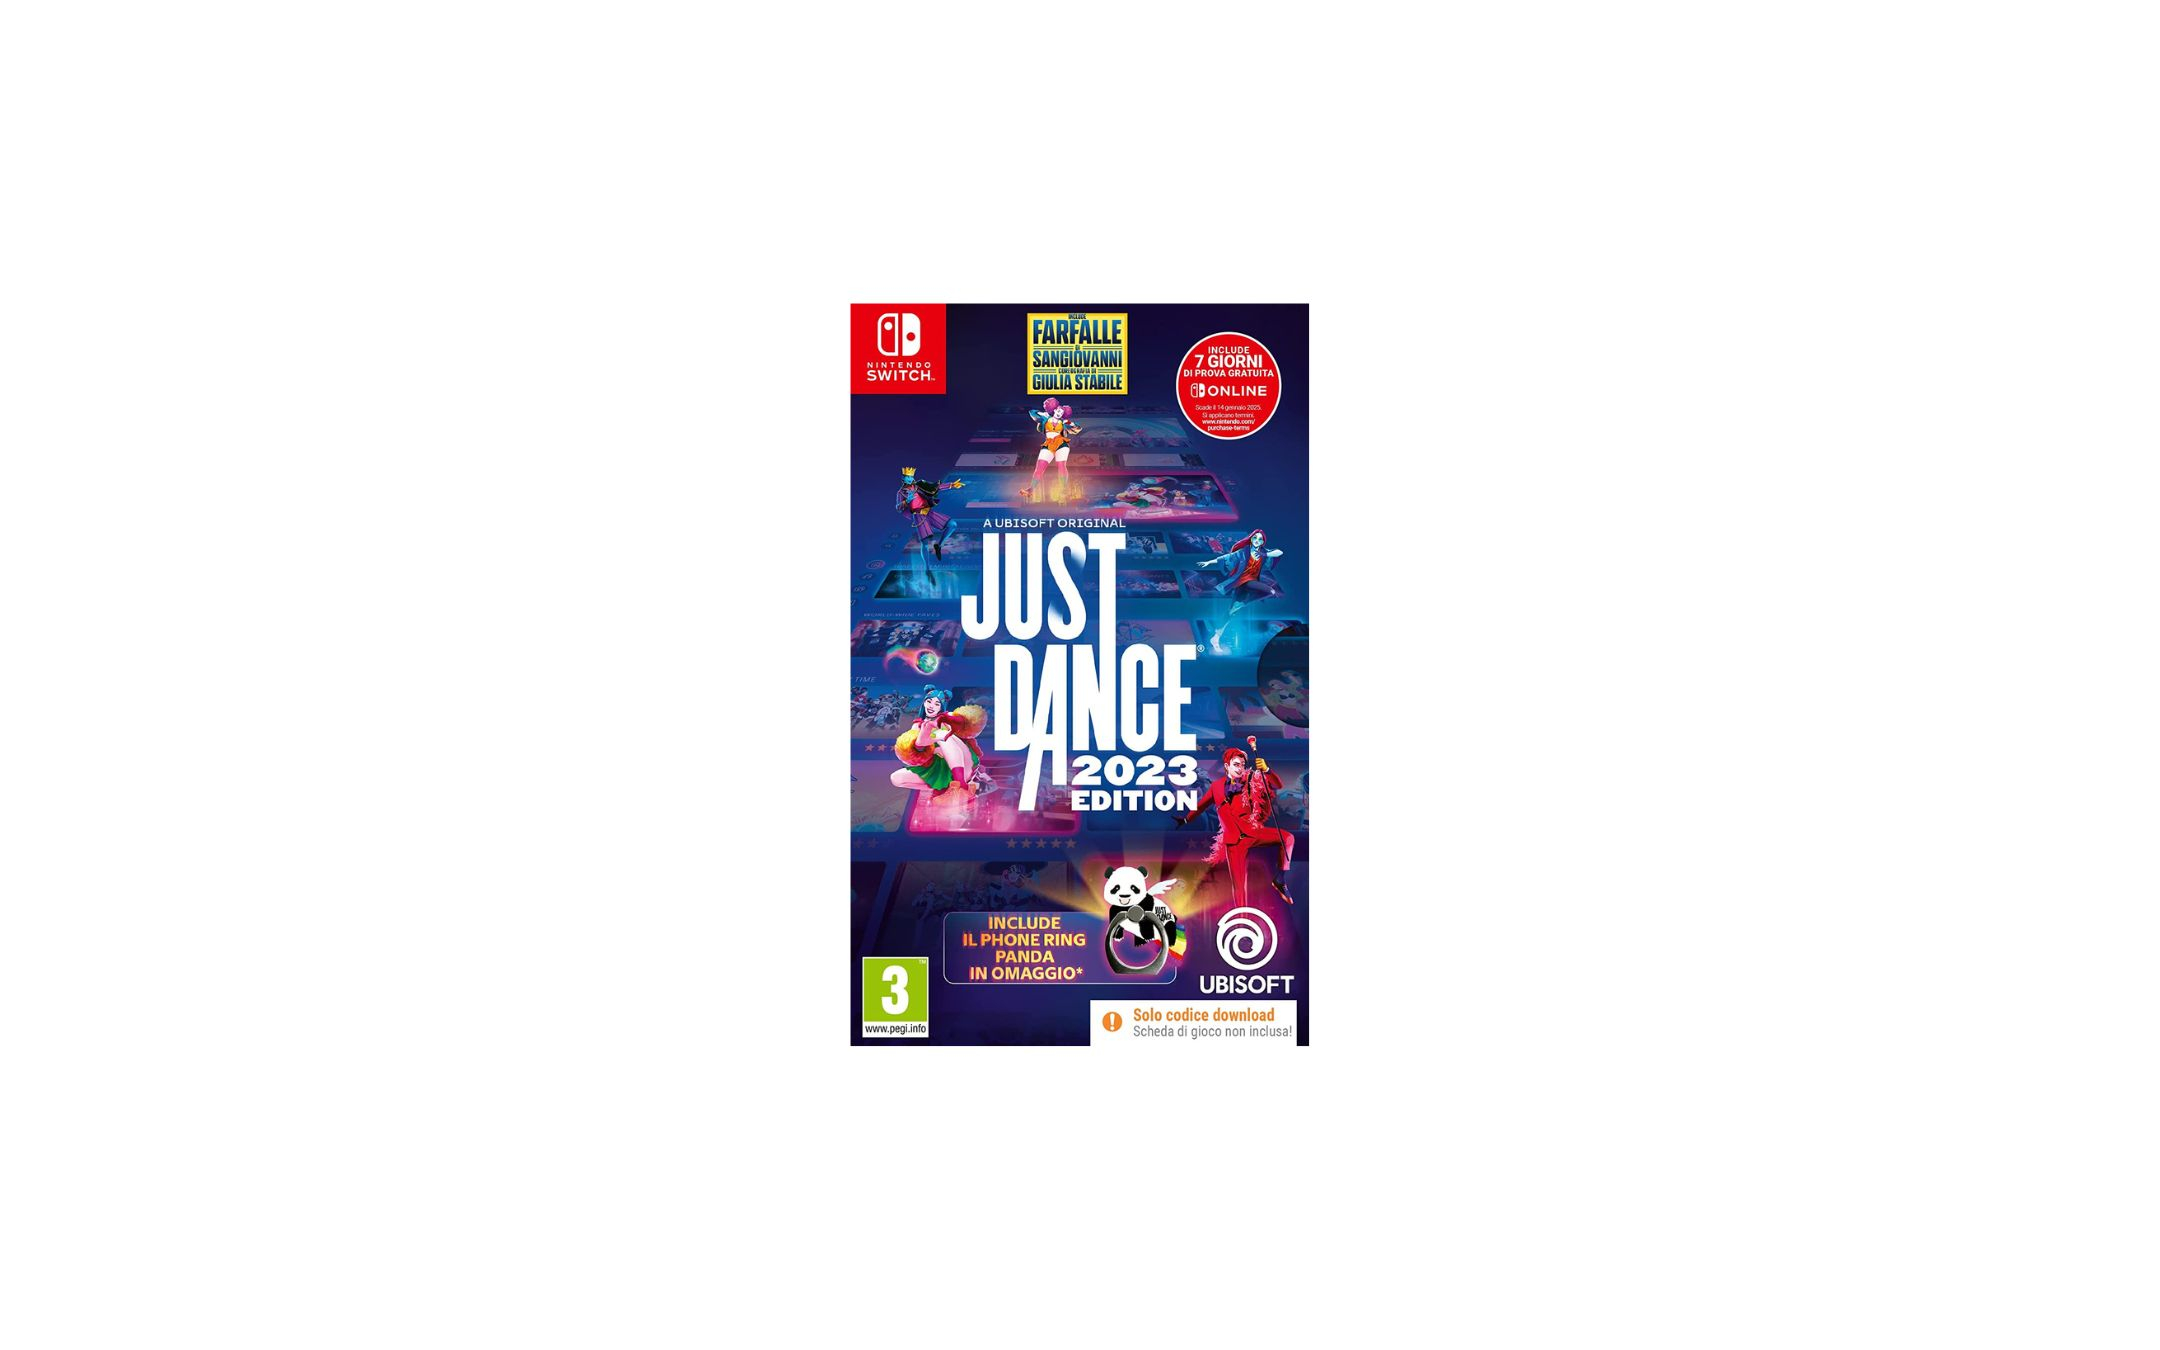 Just Dance 2023: la special edition è in sconto su Amazon